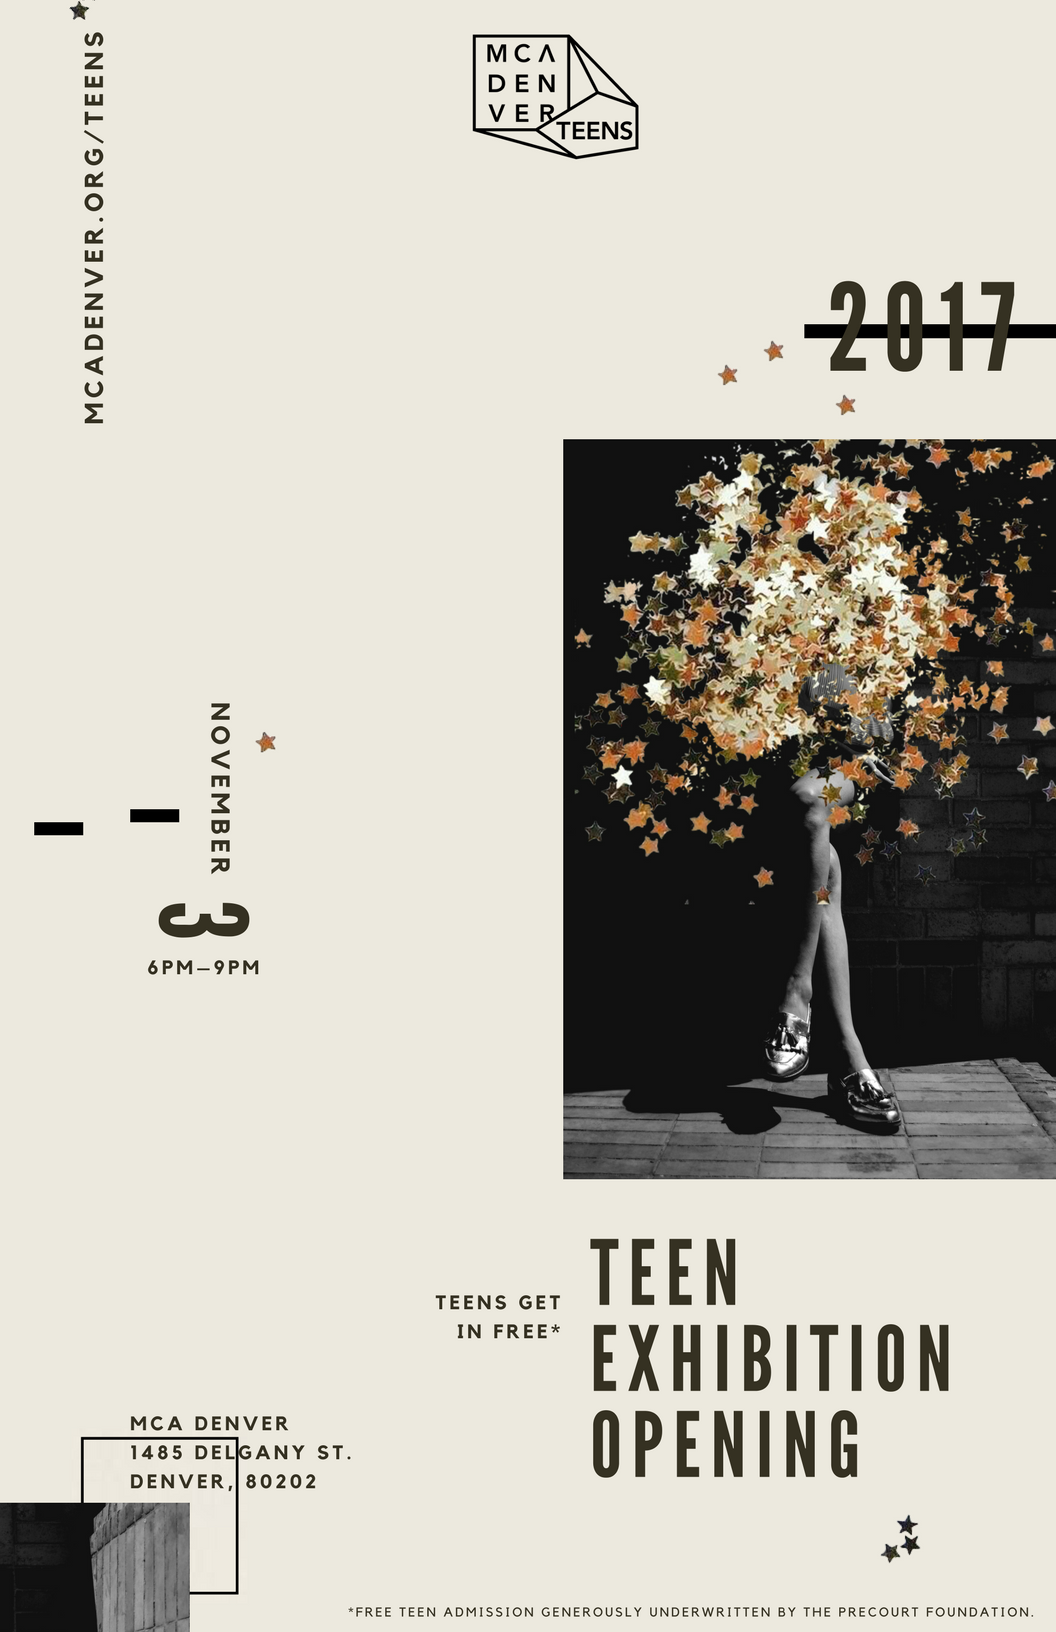 Teen Art Show November 2, 2017